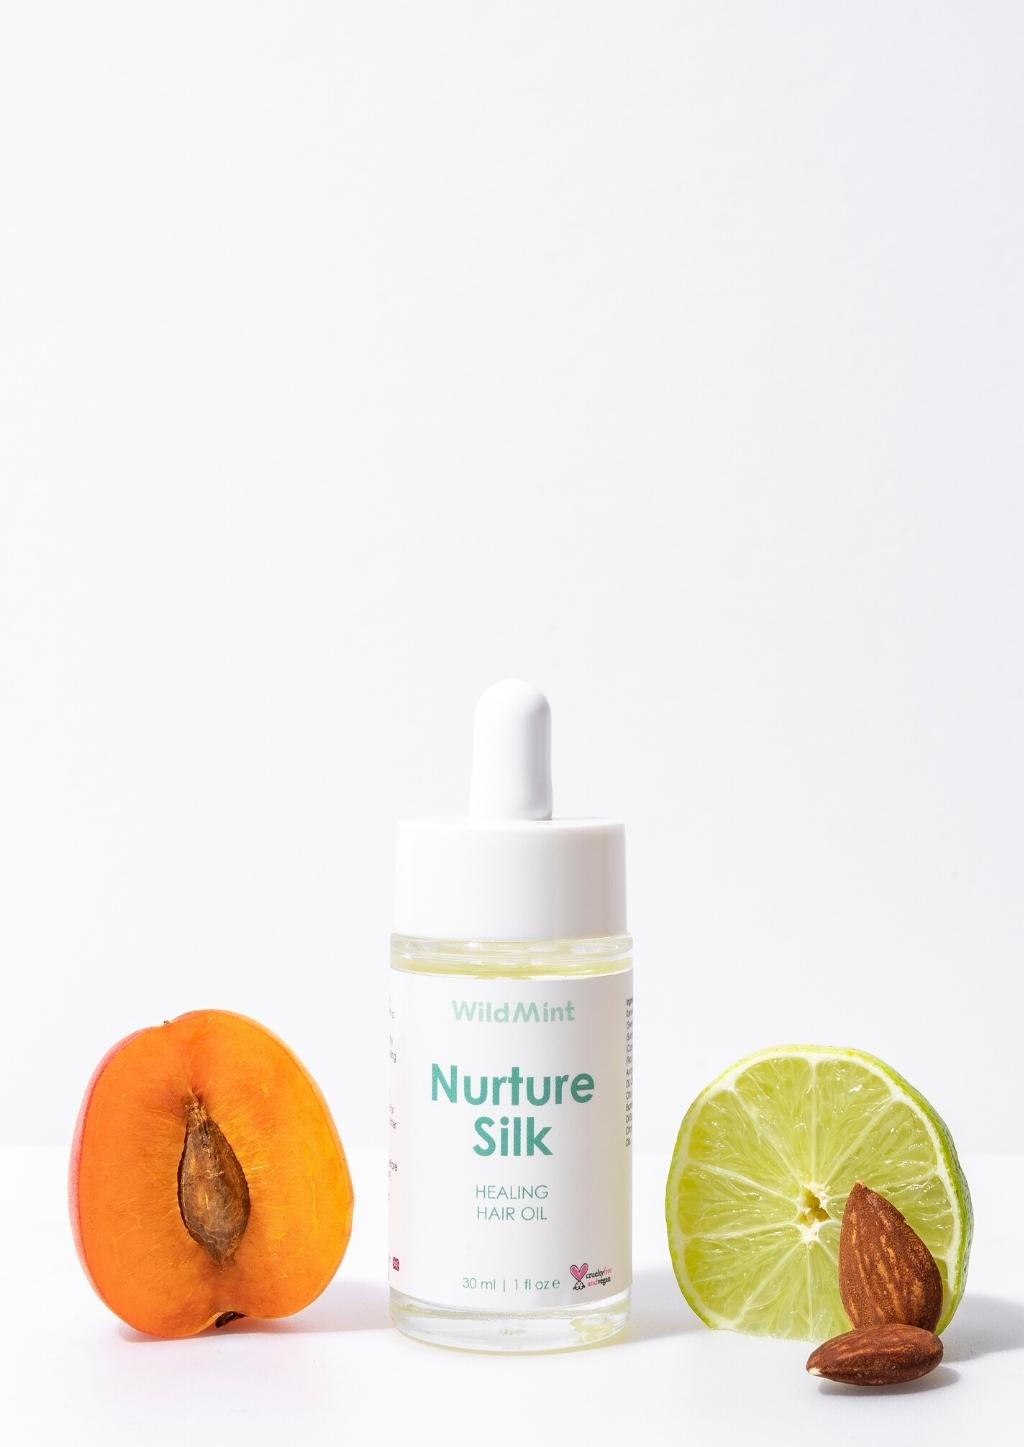 Nurture Silk